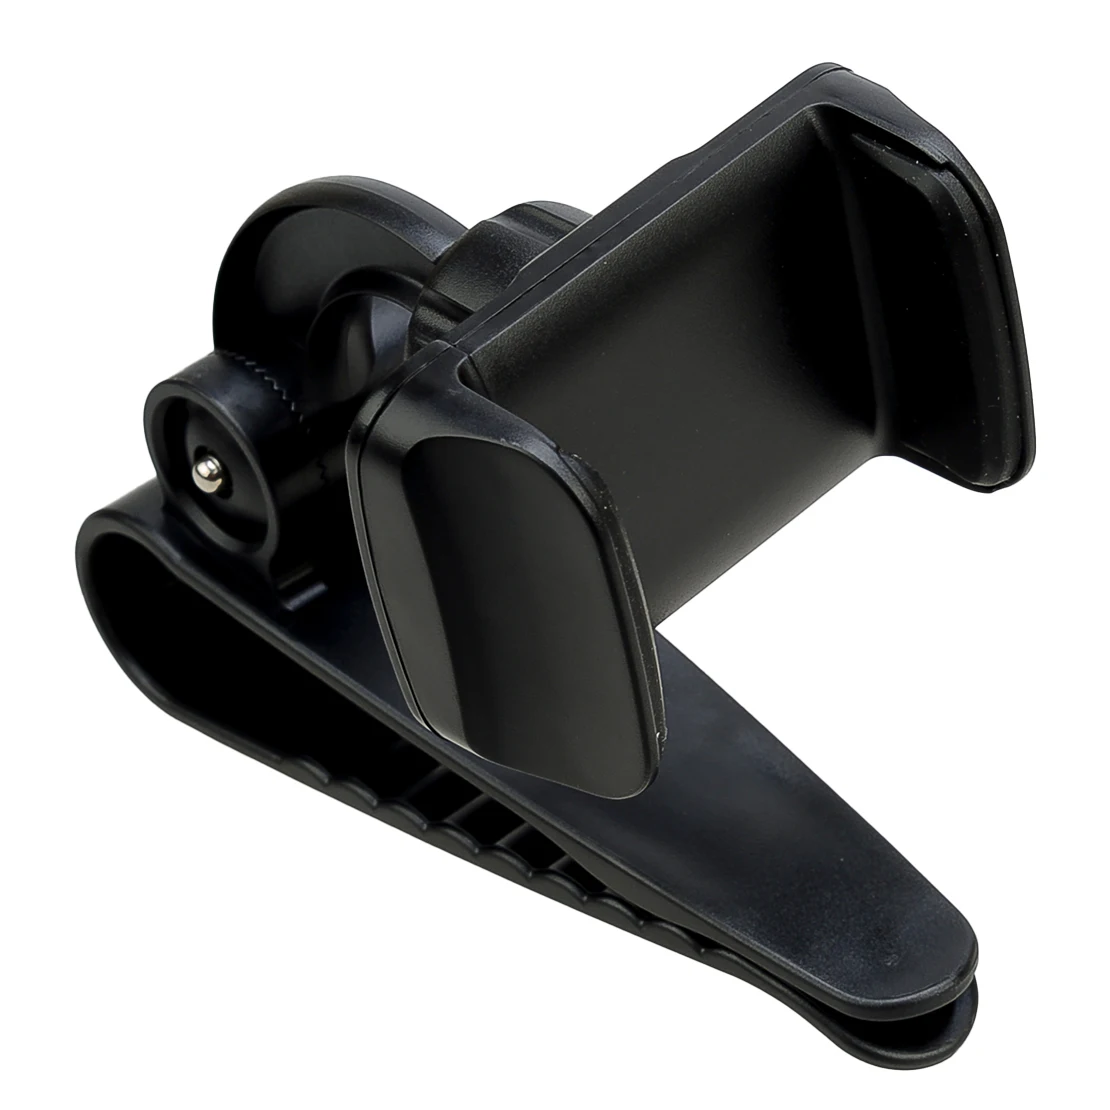 אוניברסלי שחור 360° Rotatable המכונית מגן השמש הטלפון הר מחזיק עם קליפ פלסטיק ABS - 5